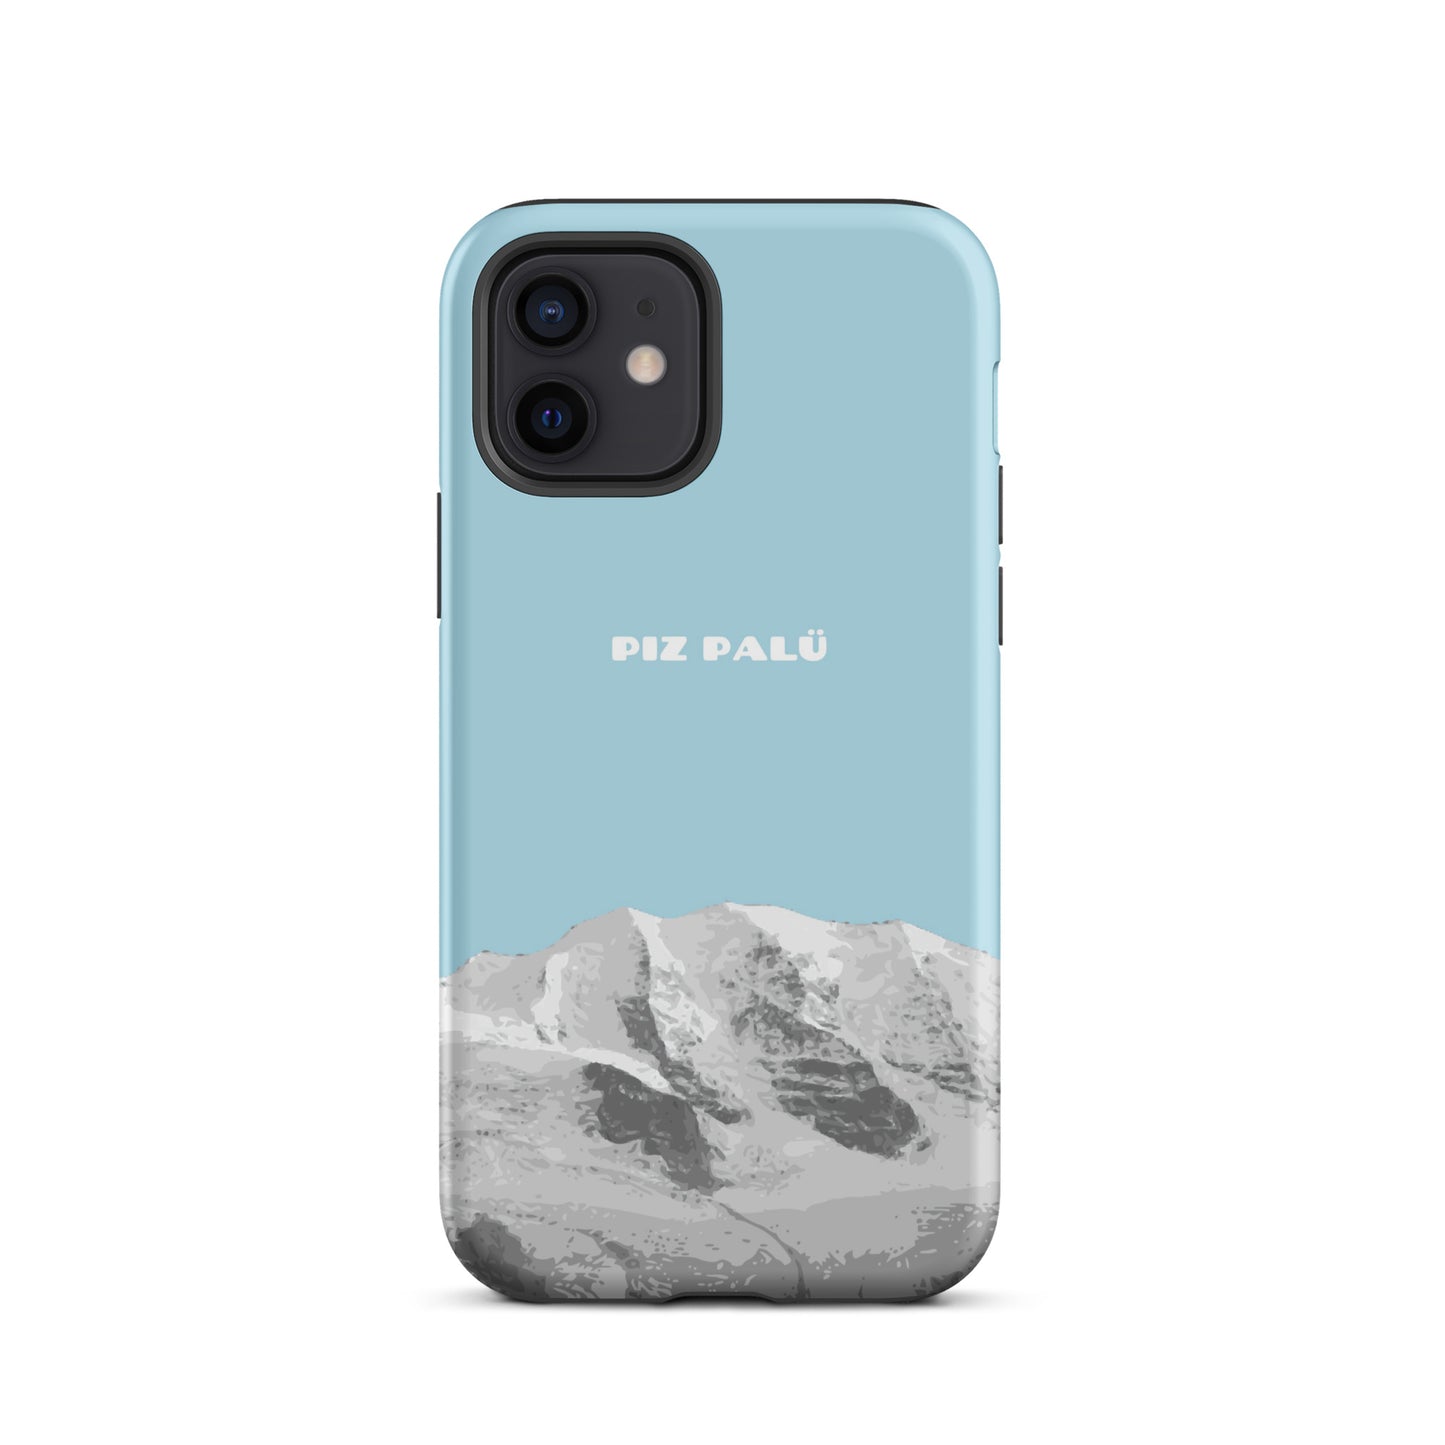 Hülle für das iPhone 12 von Apple in der Farbe Hellblau, dass den Piz Palü in Graubünden zeigt.